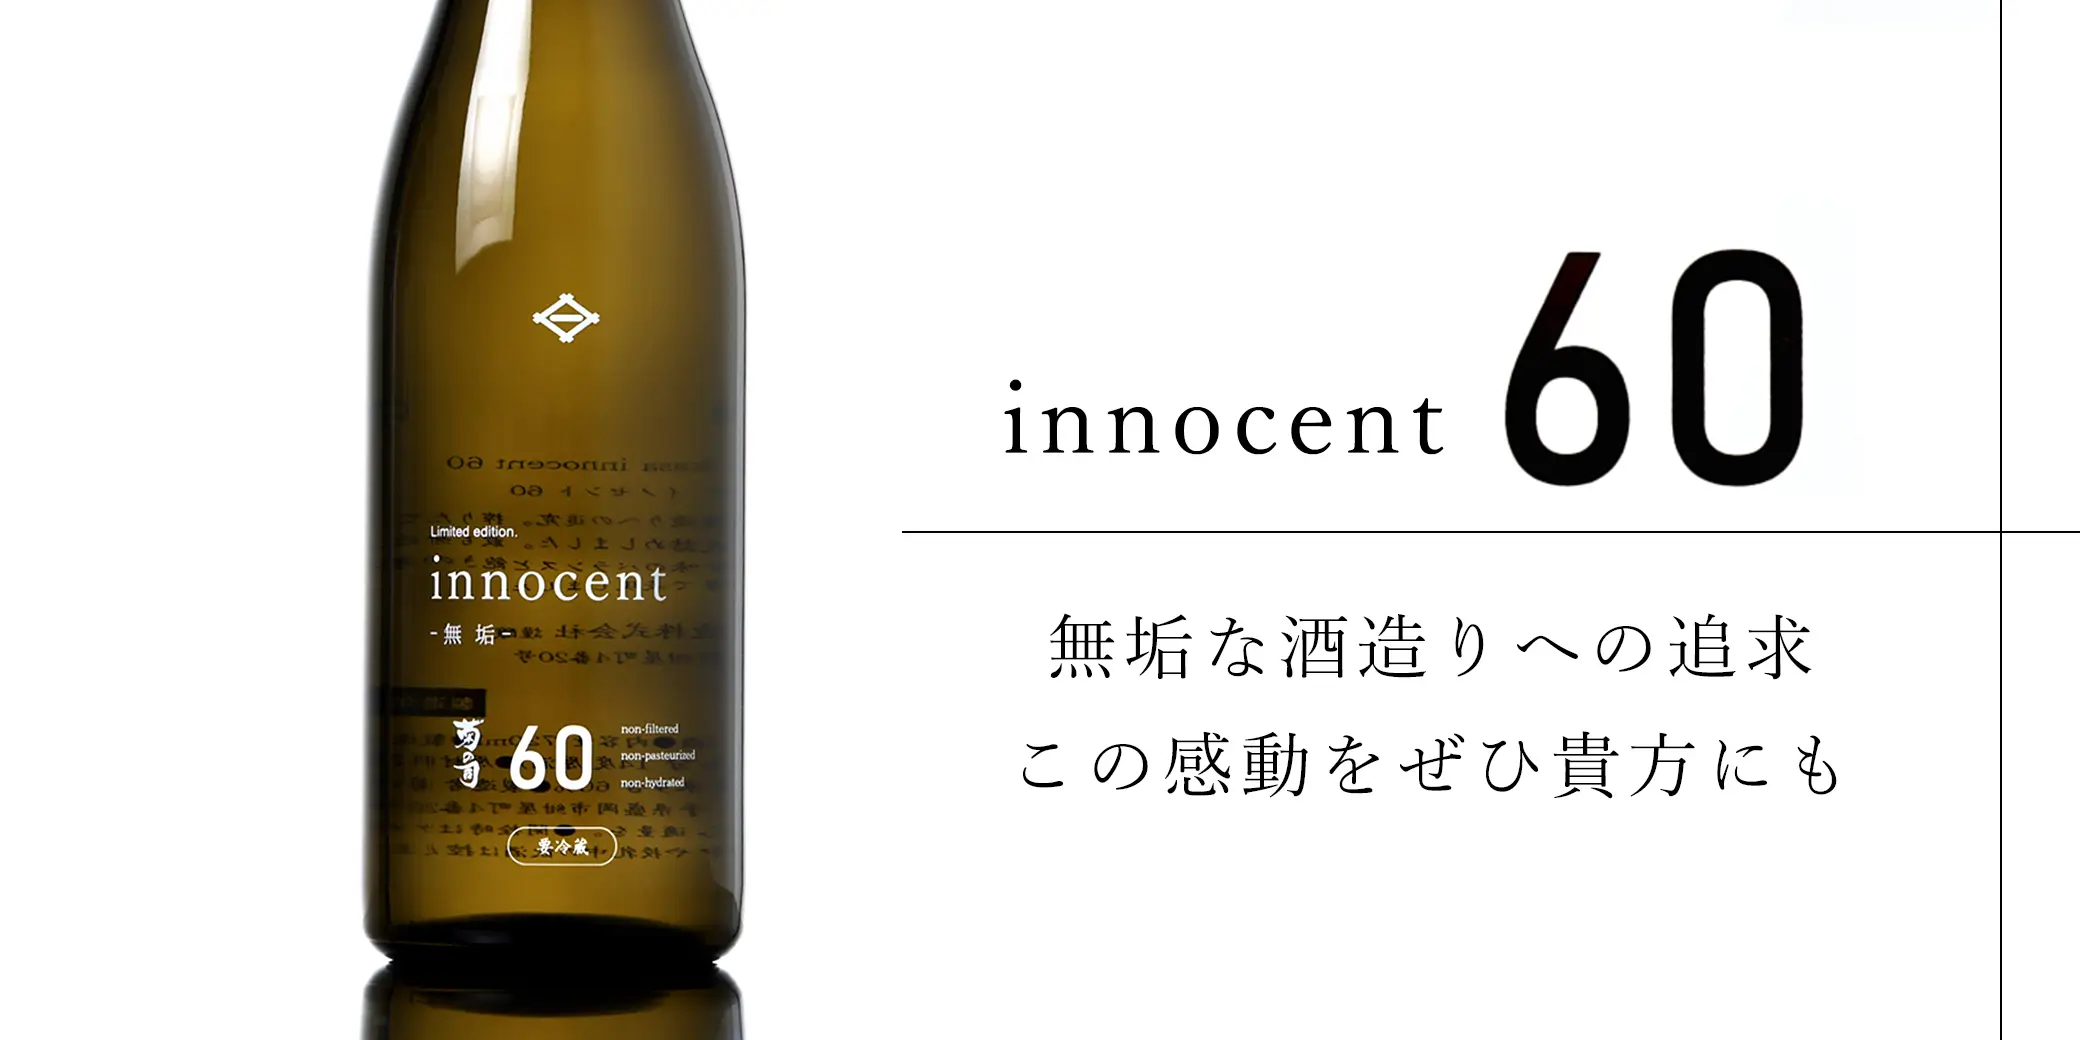 菊の司 純米 innocent60